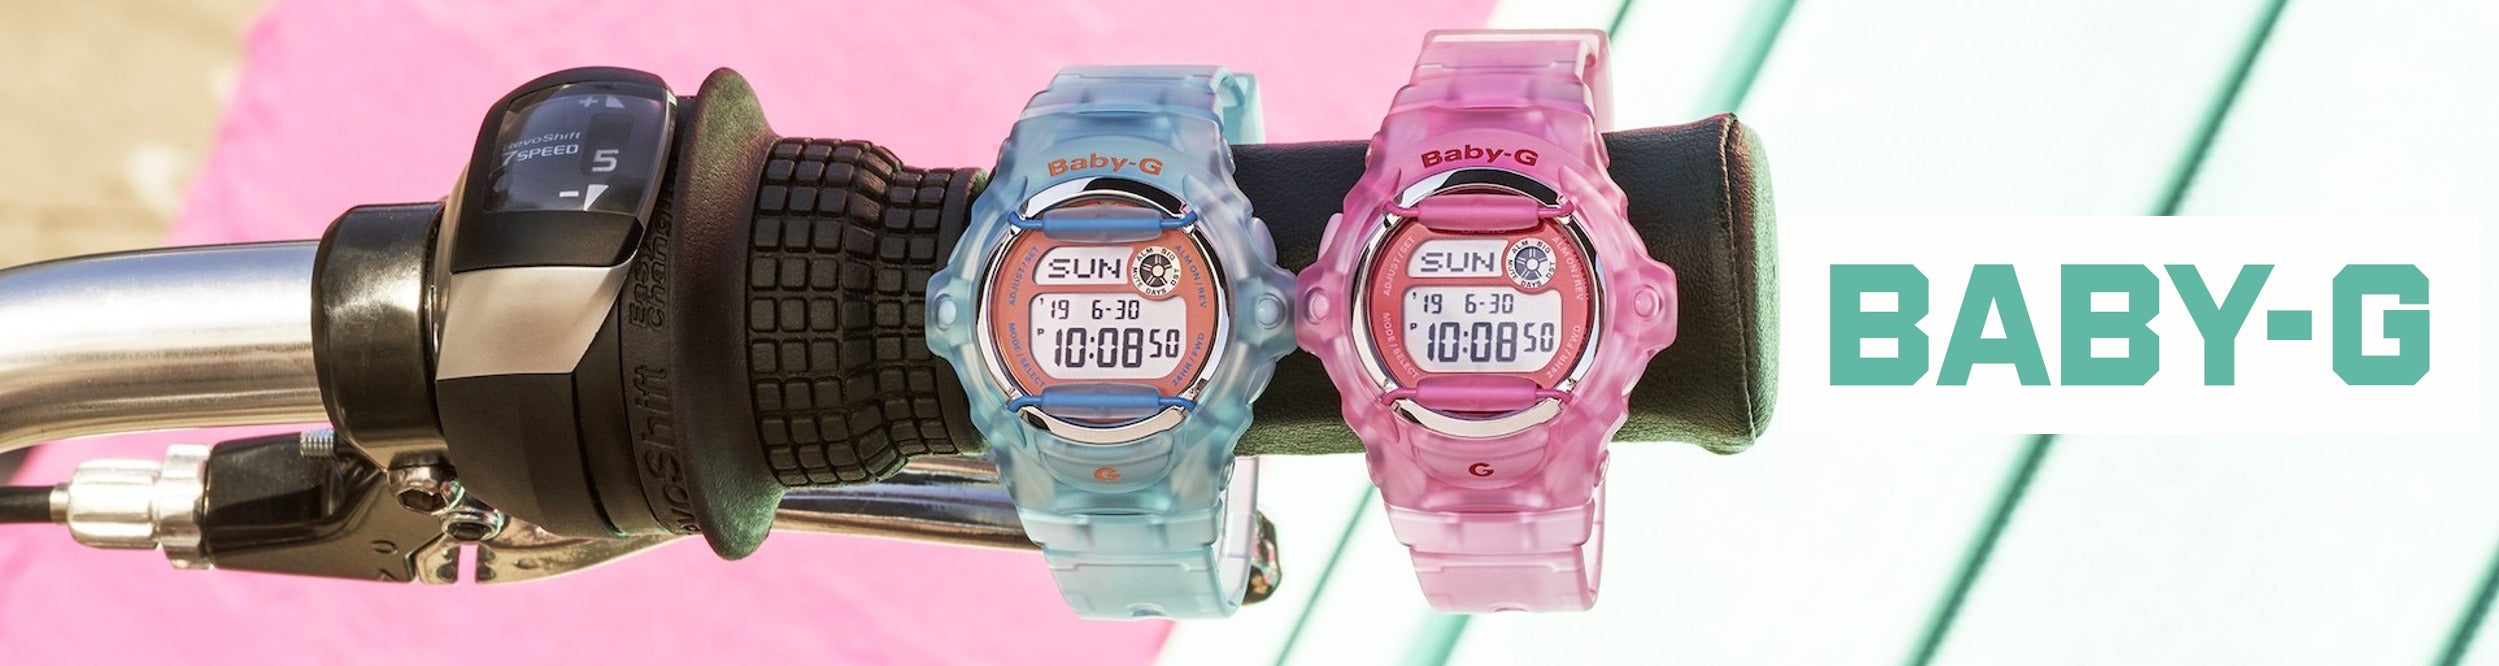 Casio Baby-G Kid's Watches